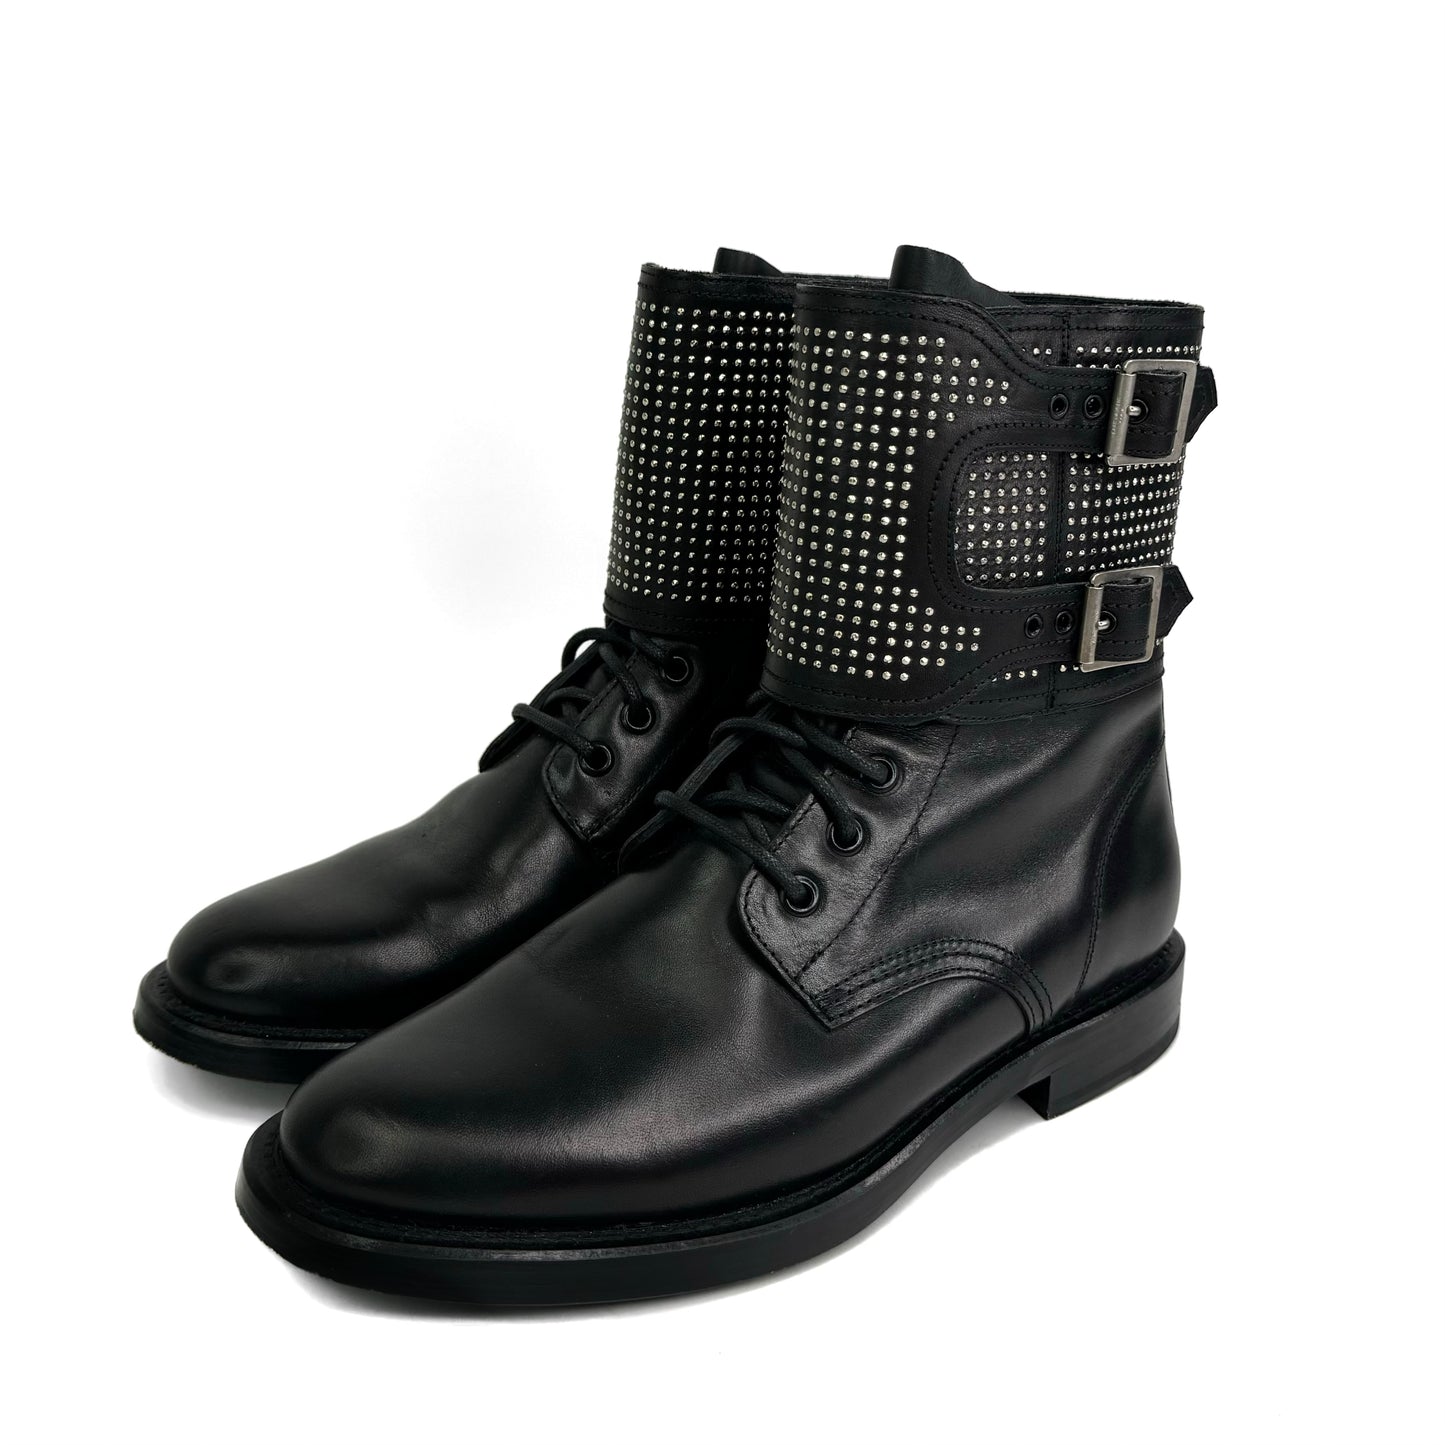 Saint Laurent Studded Buckle Combat Boots